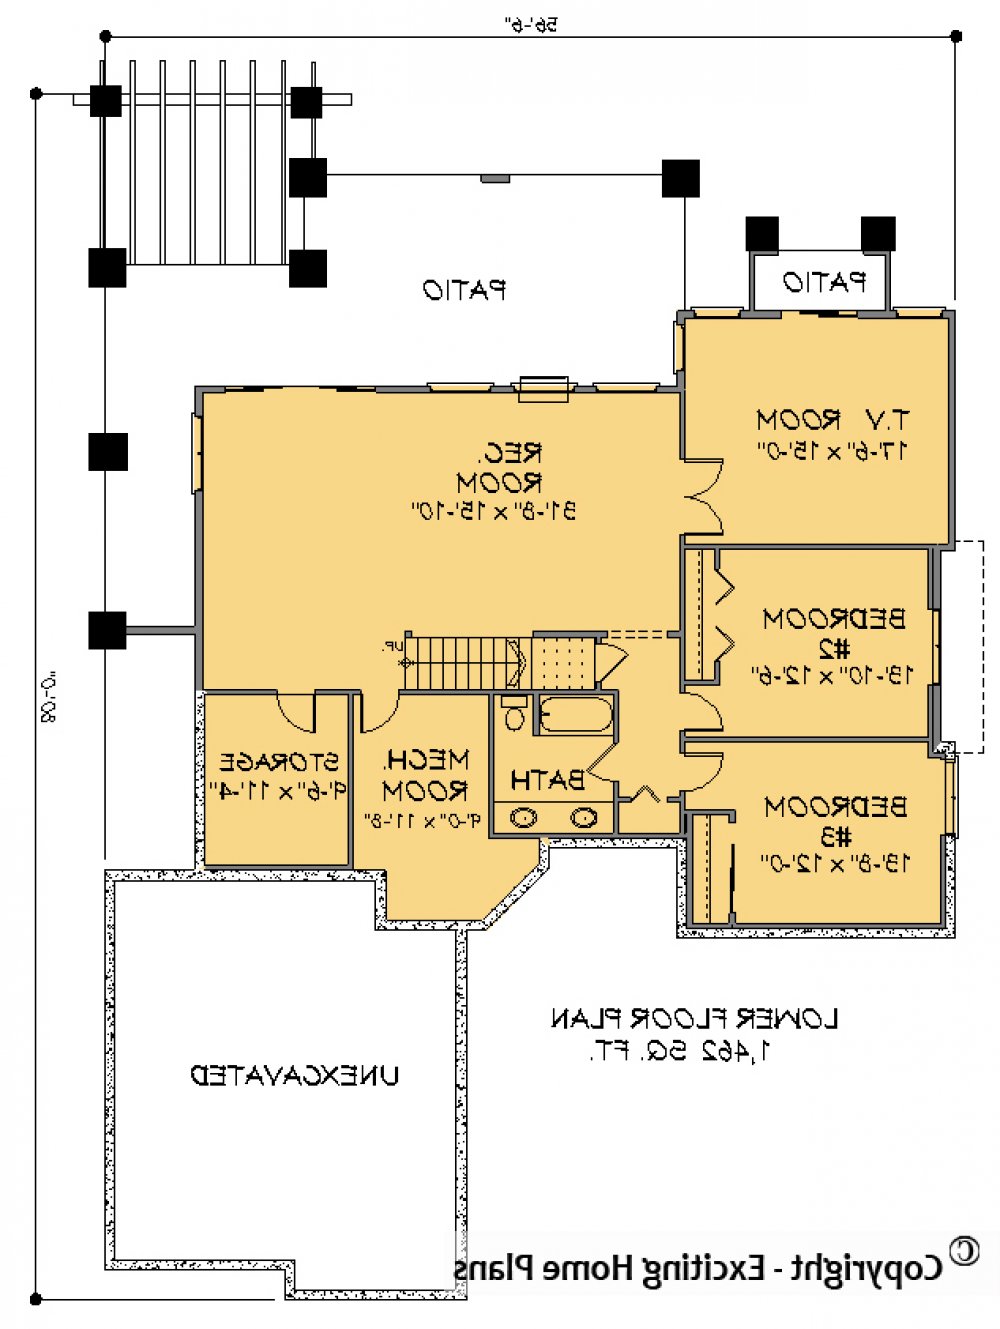 House Plan E1413-10  Lower Floor Plan REVERSE